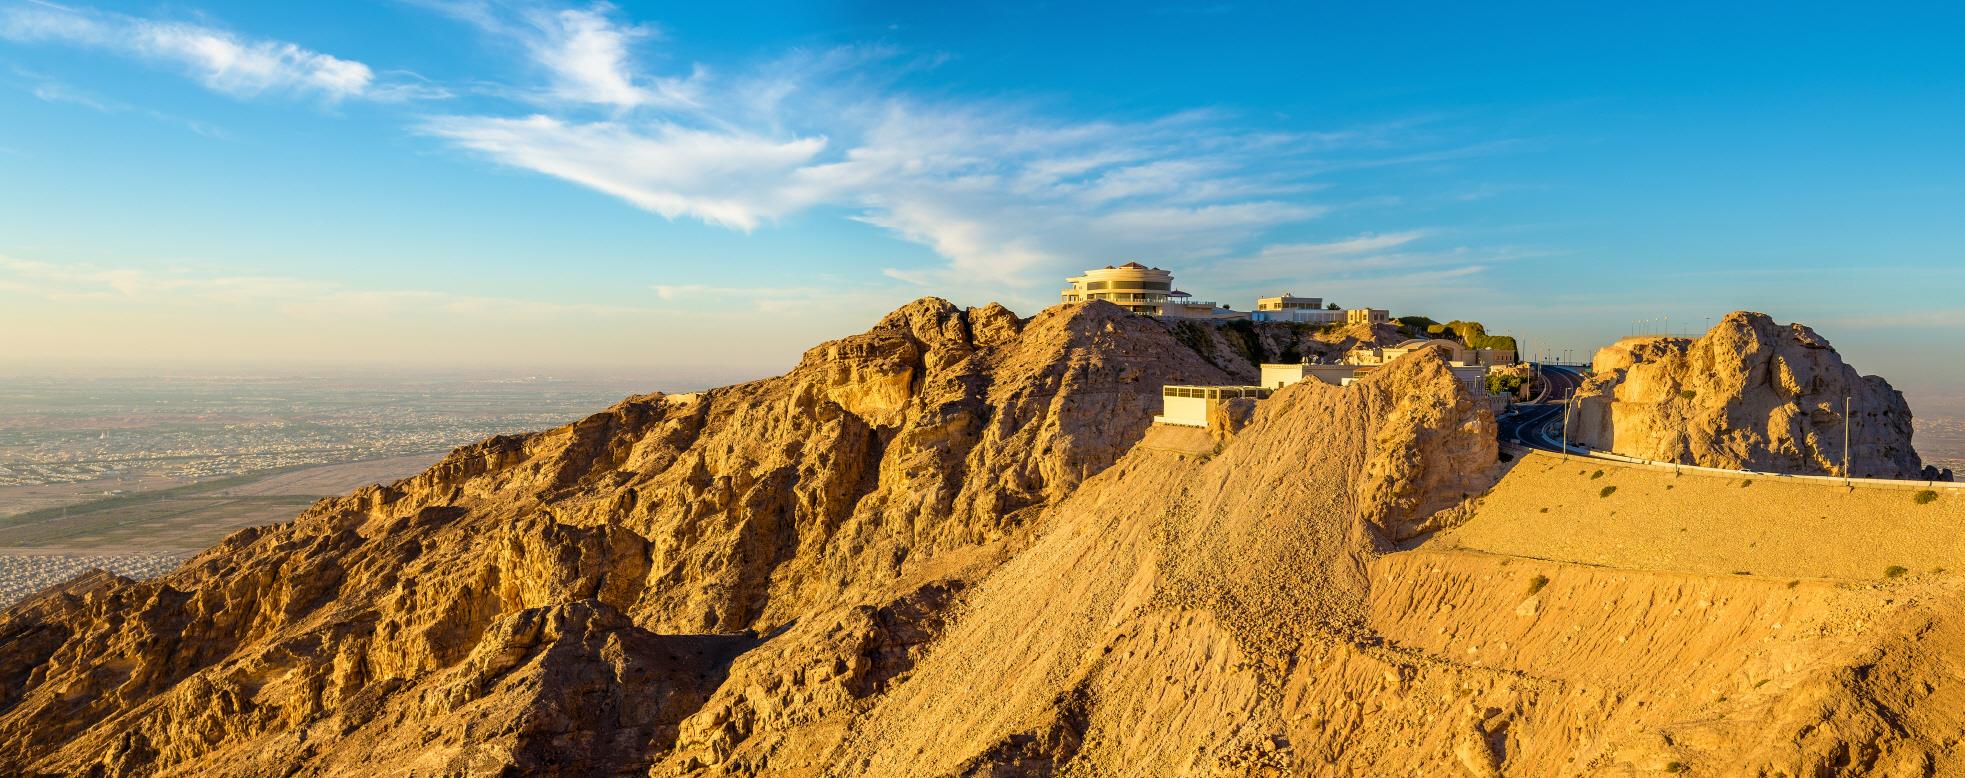 제벨 하핏  Jebel Hafeet